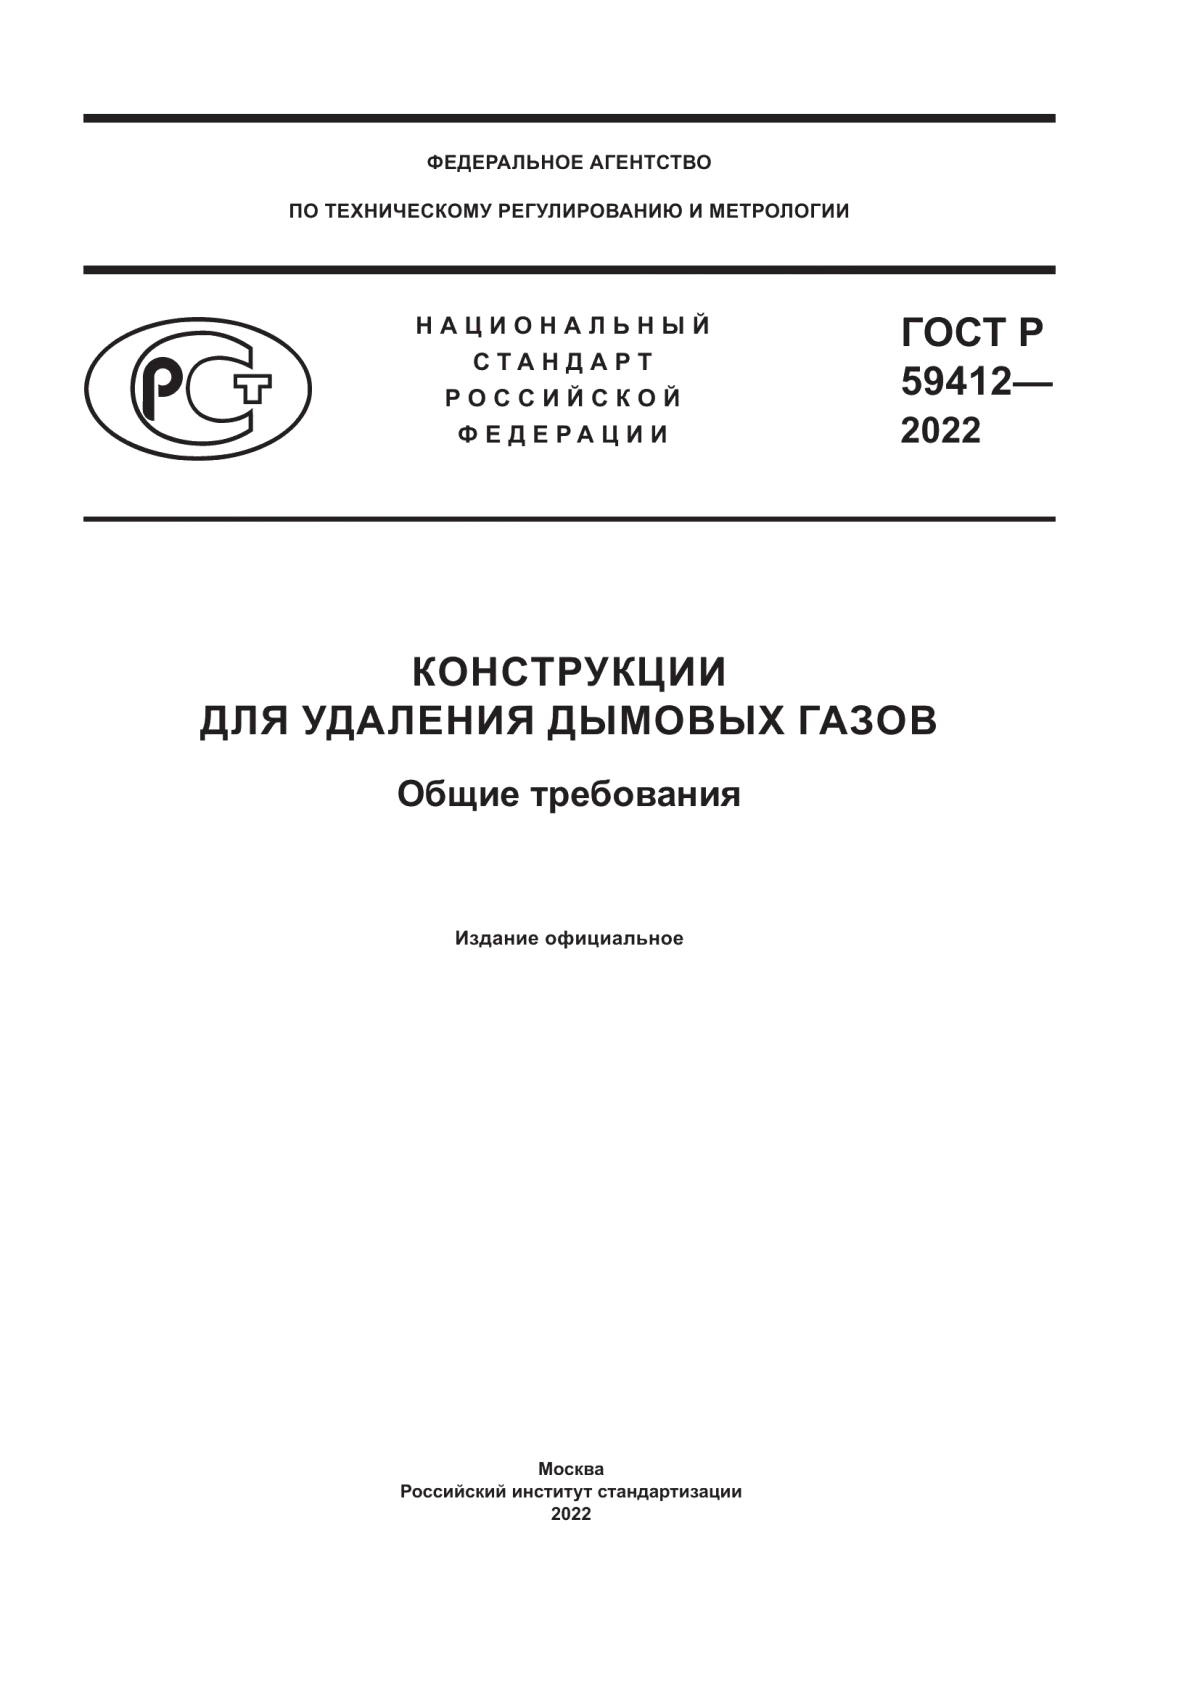 ГОСТ Р 59412-2022 Конструкции для удаления дымовых газов. Общие требования